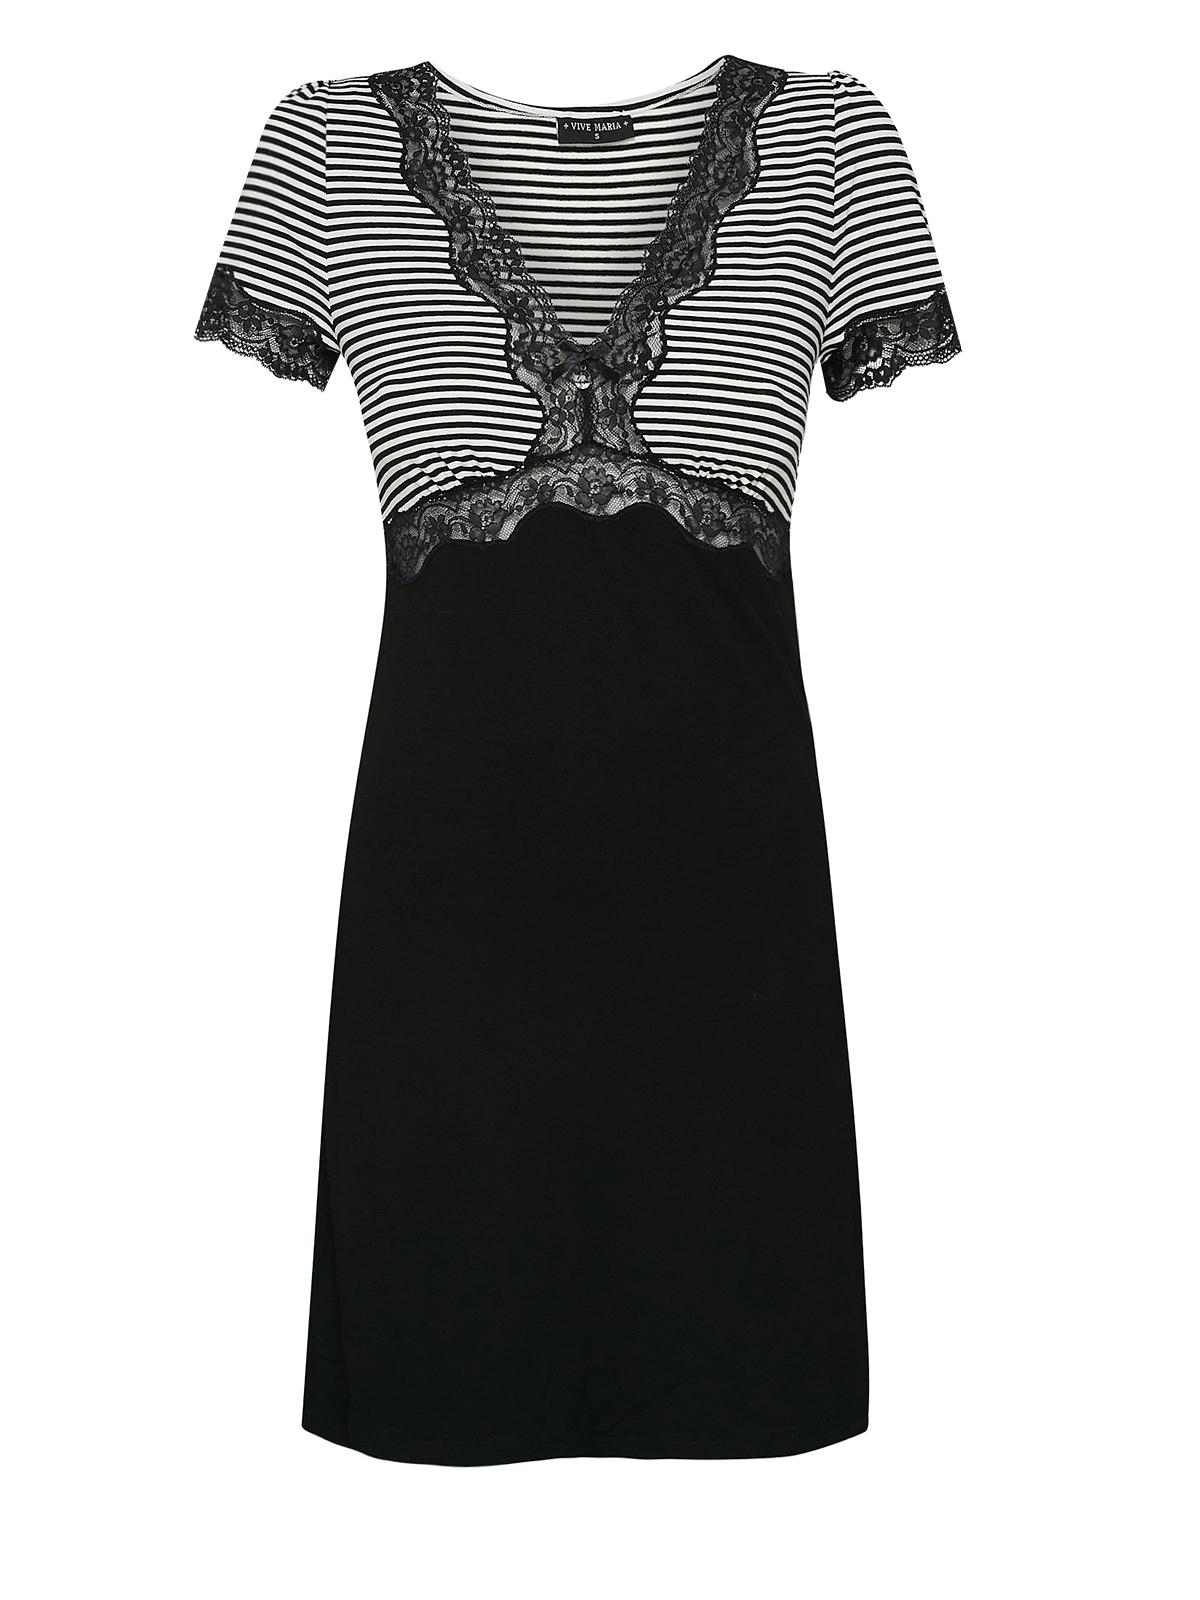 Vive Maria Ahoi Girl Damen A-Linien-Kleid schwarz/weiß